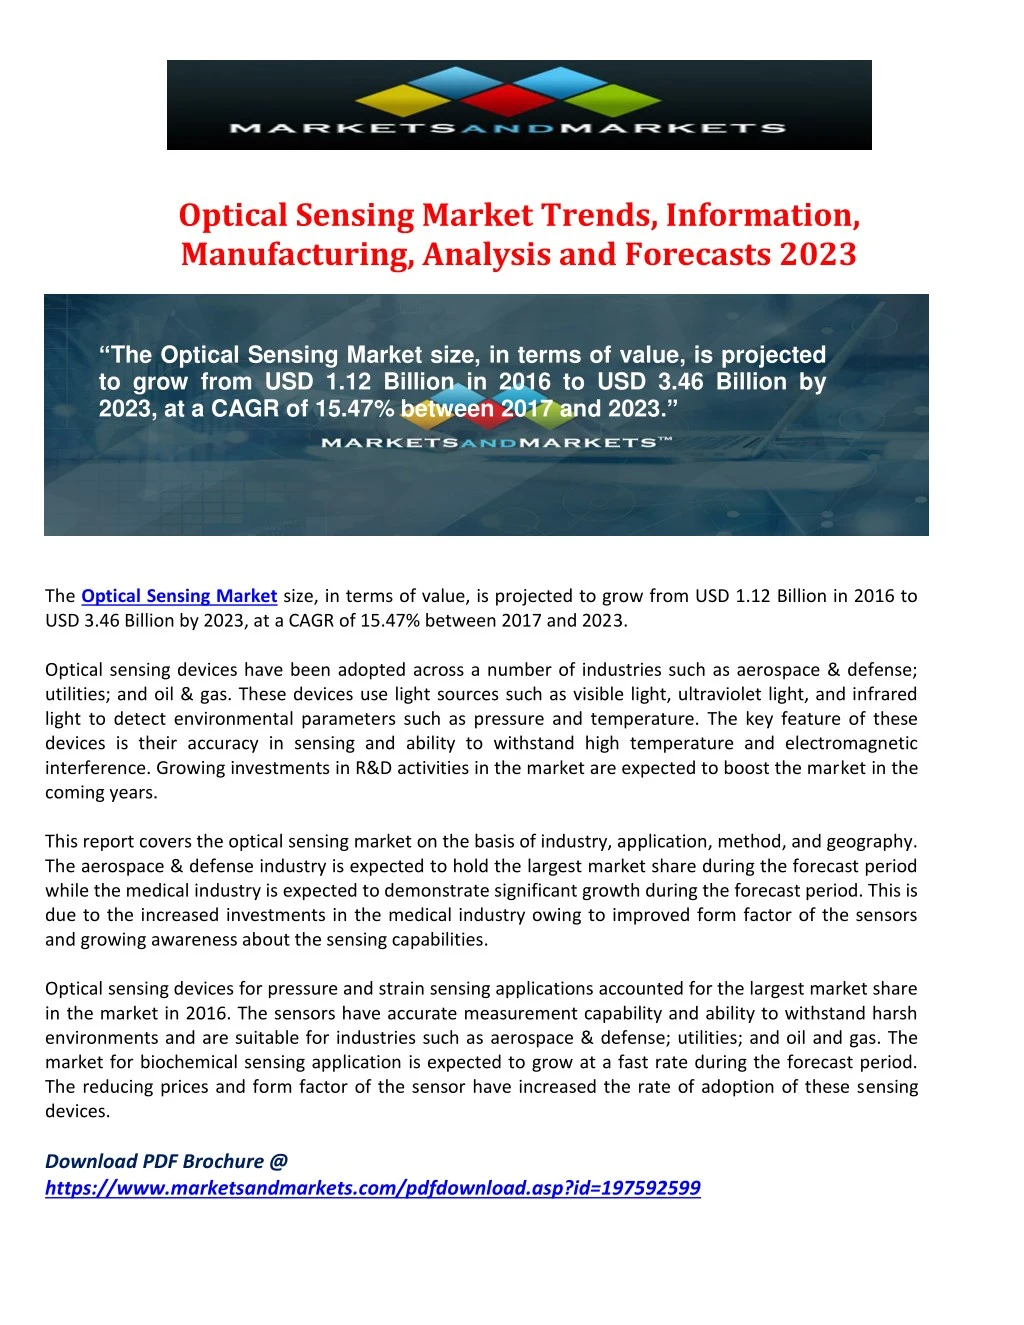 optical sensing market trends information